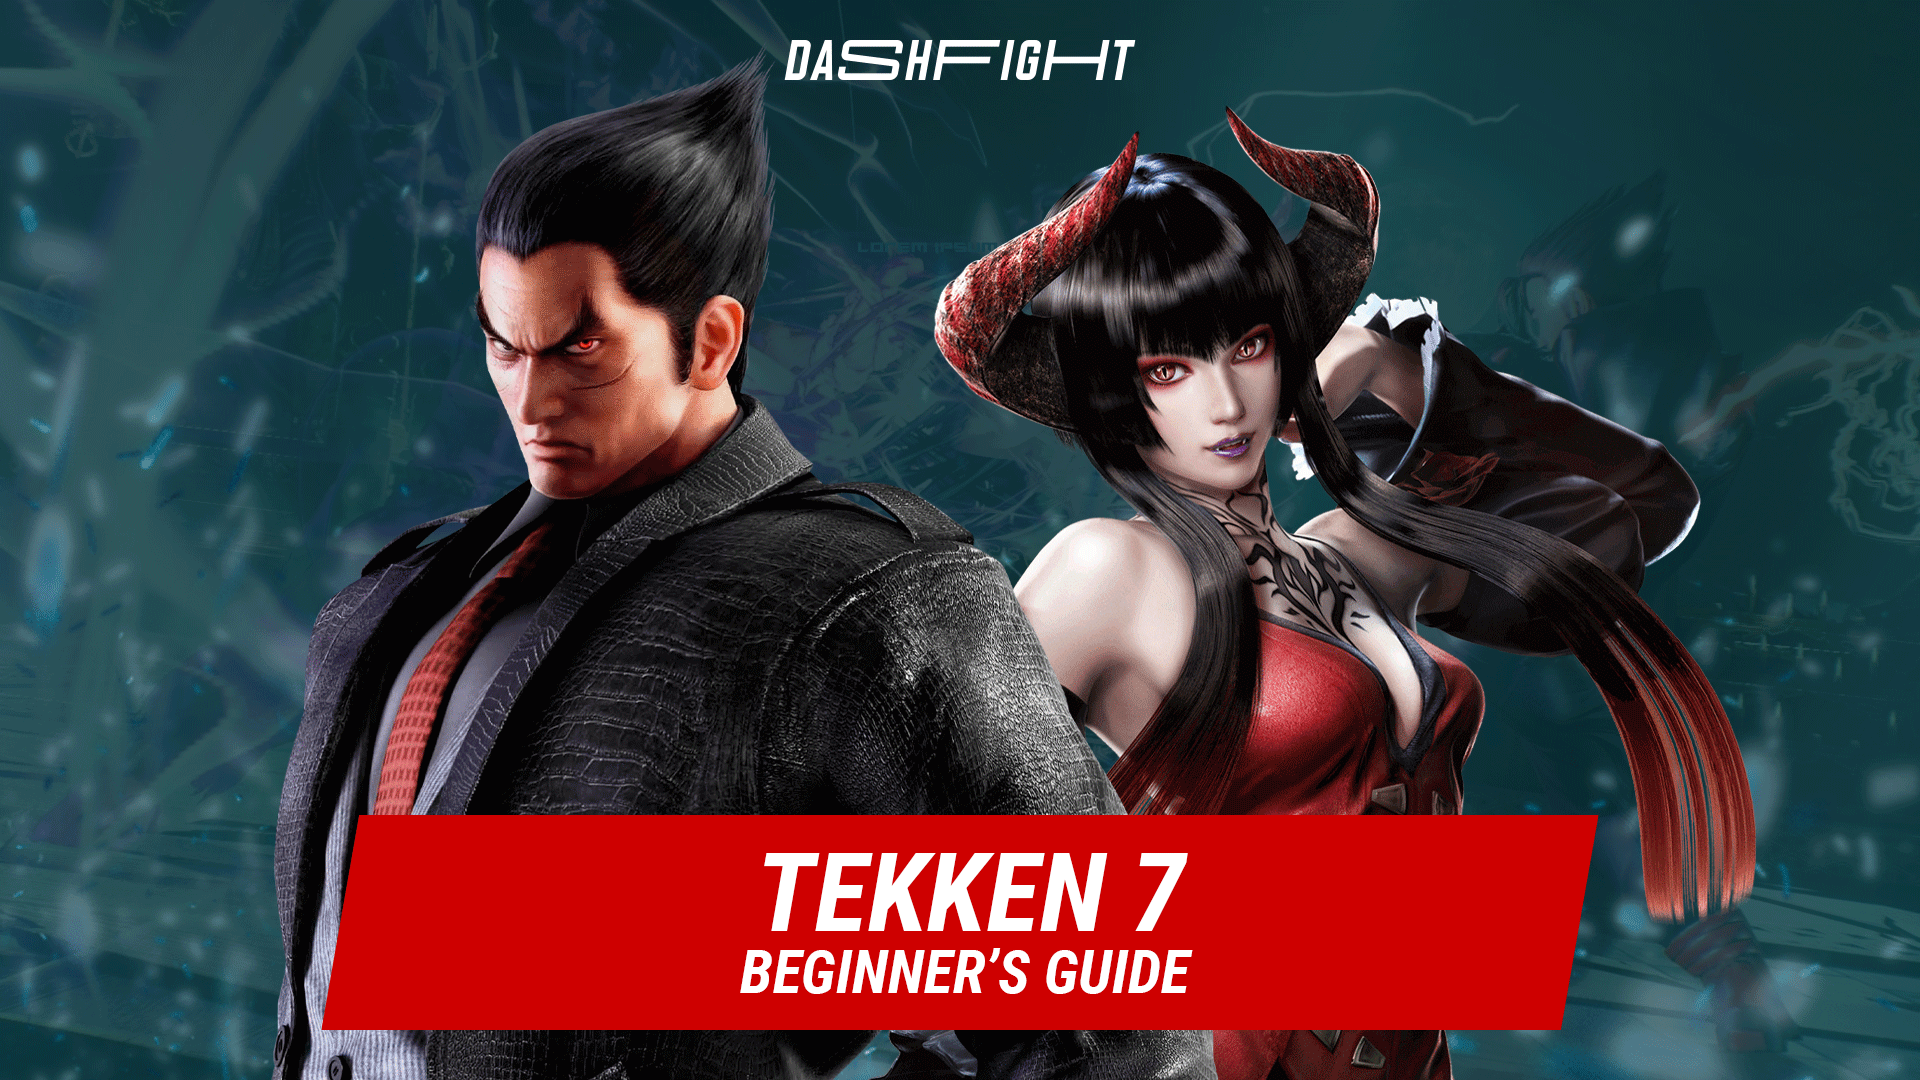 How to play Tekken 7